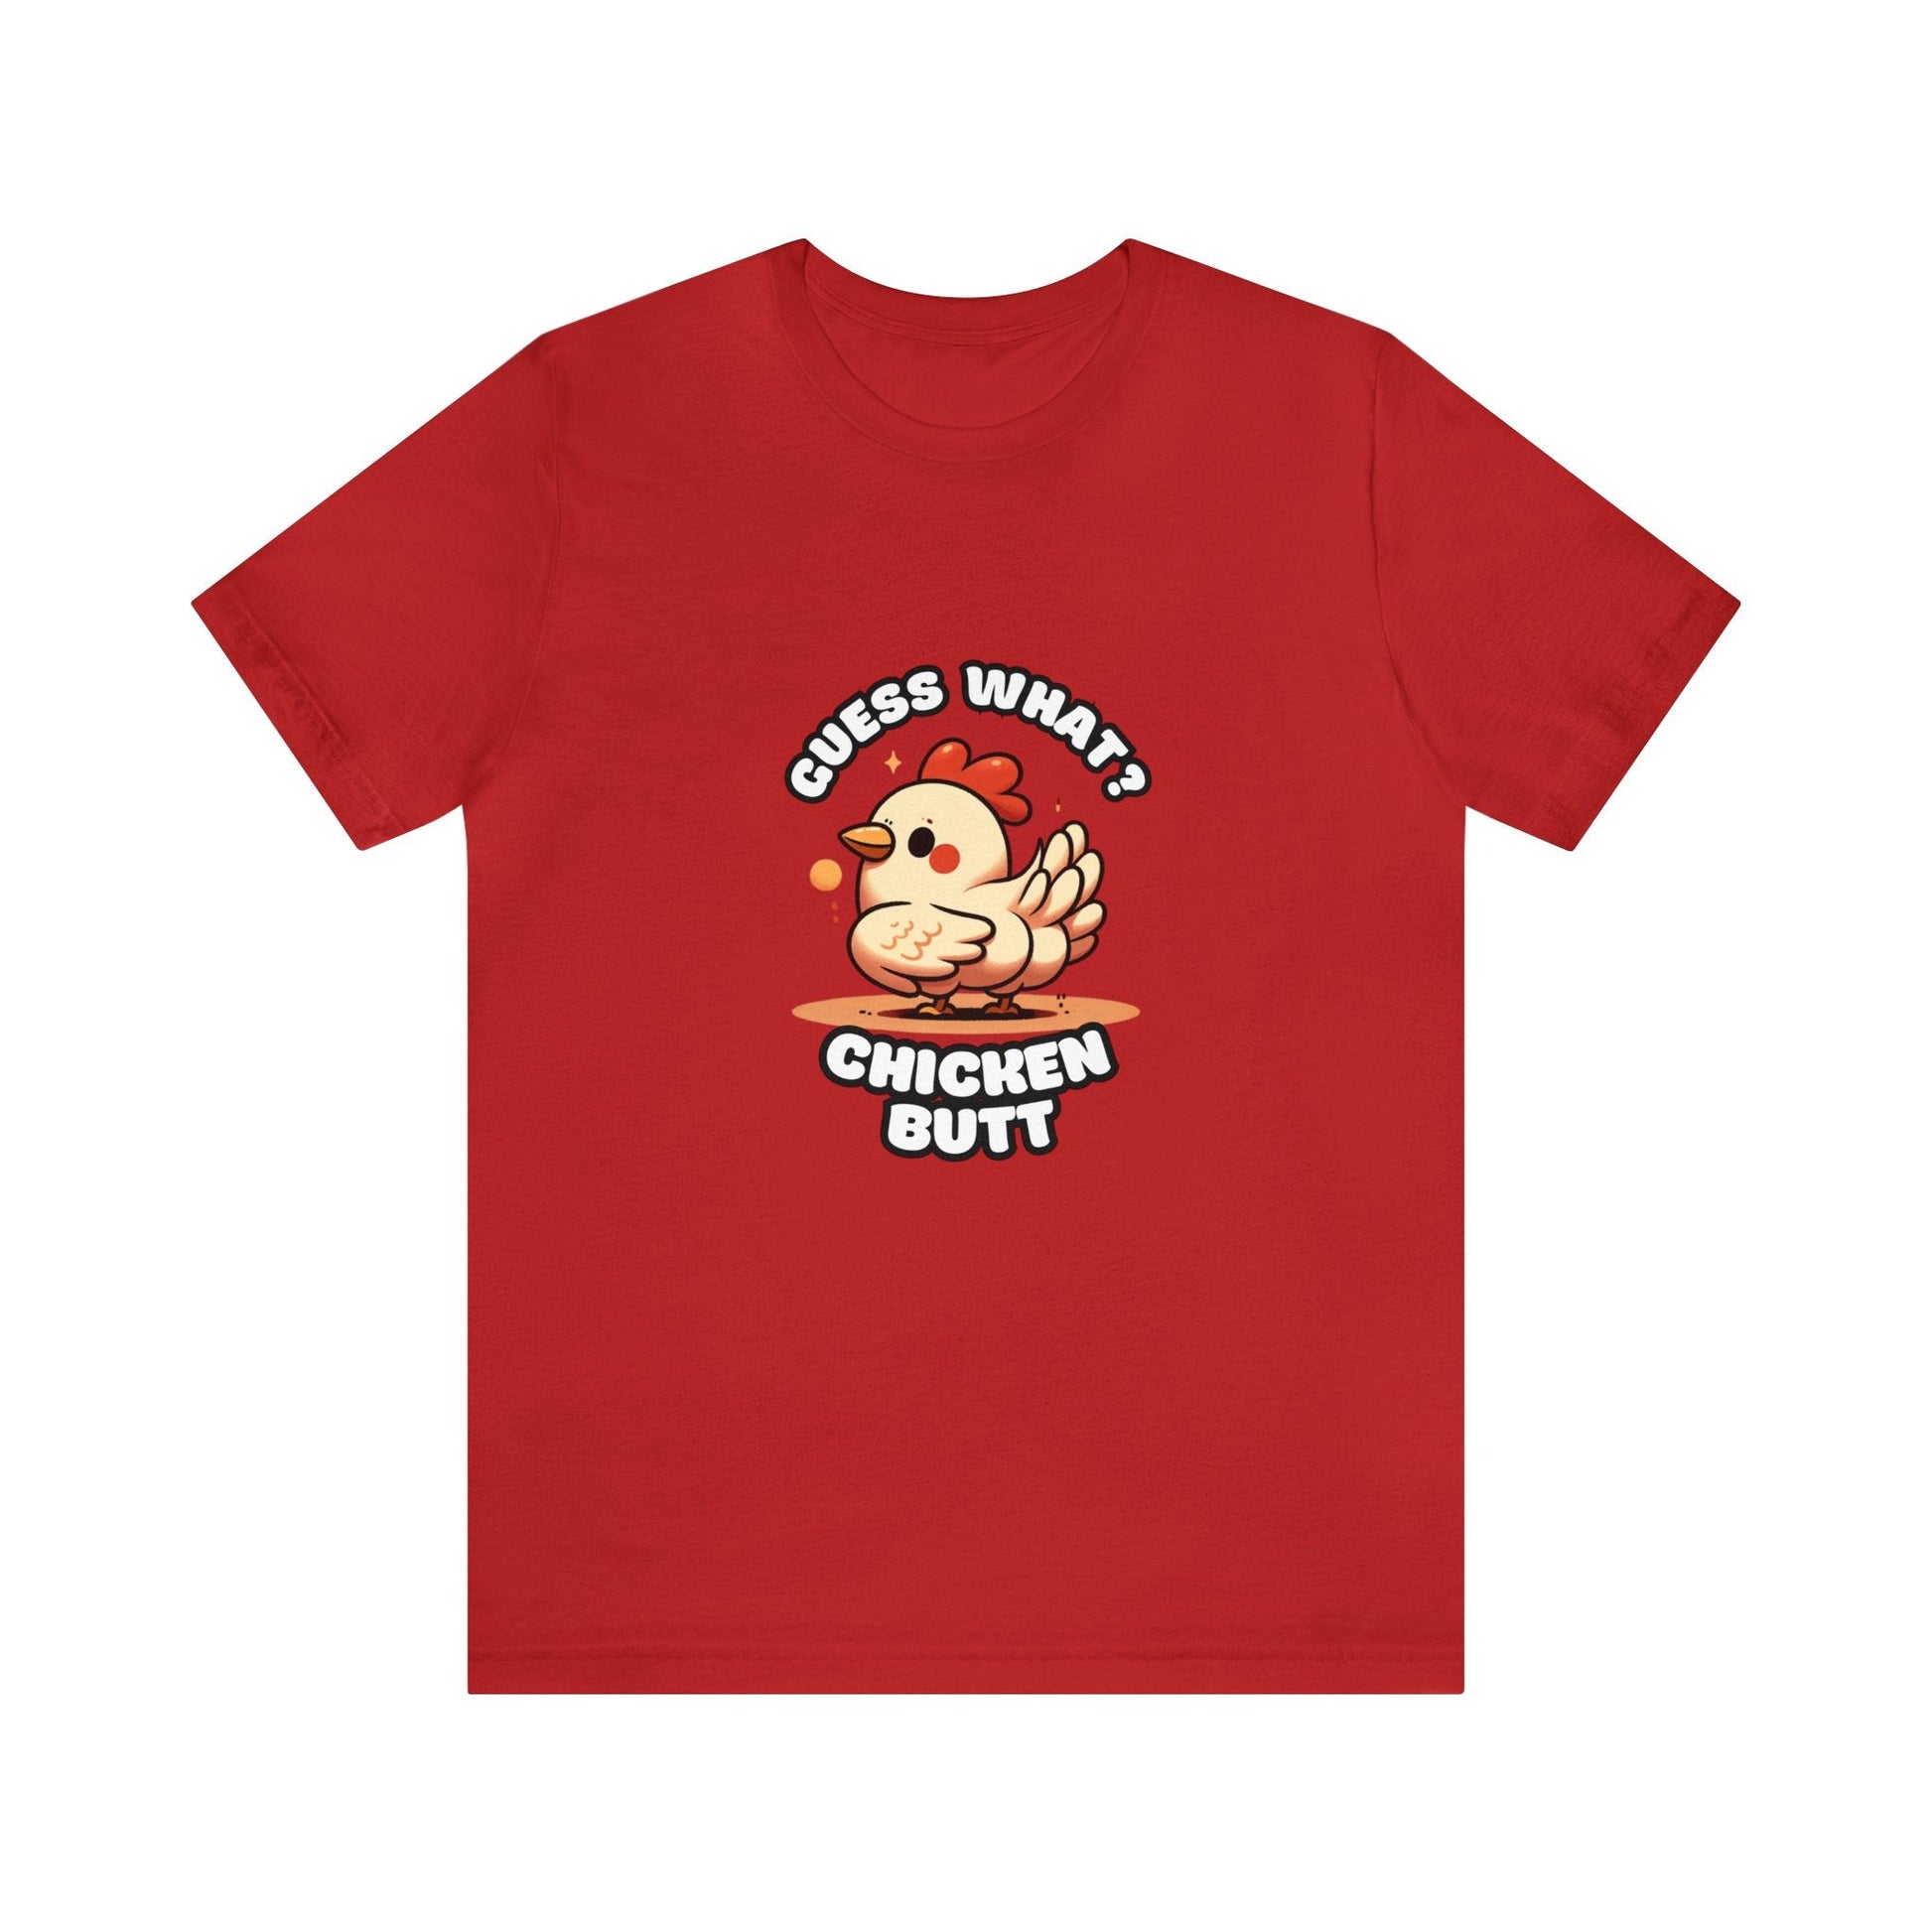 Guess What? Chicken Butt - Chicken T-shirt Red / XS